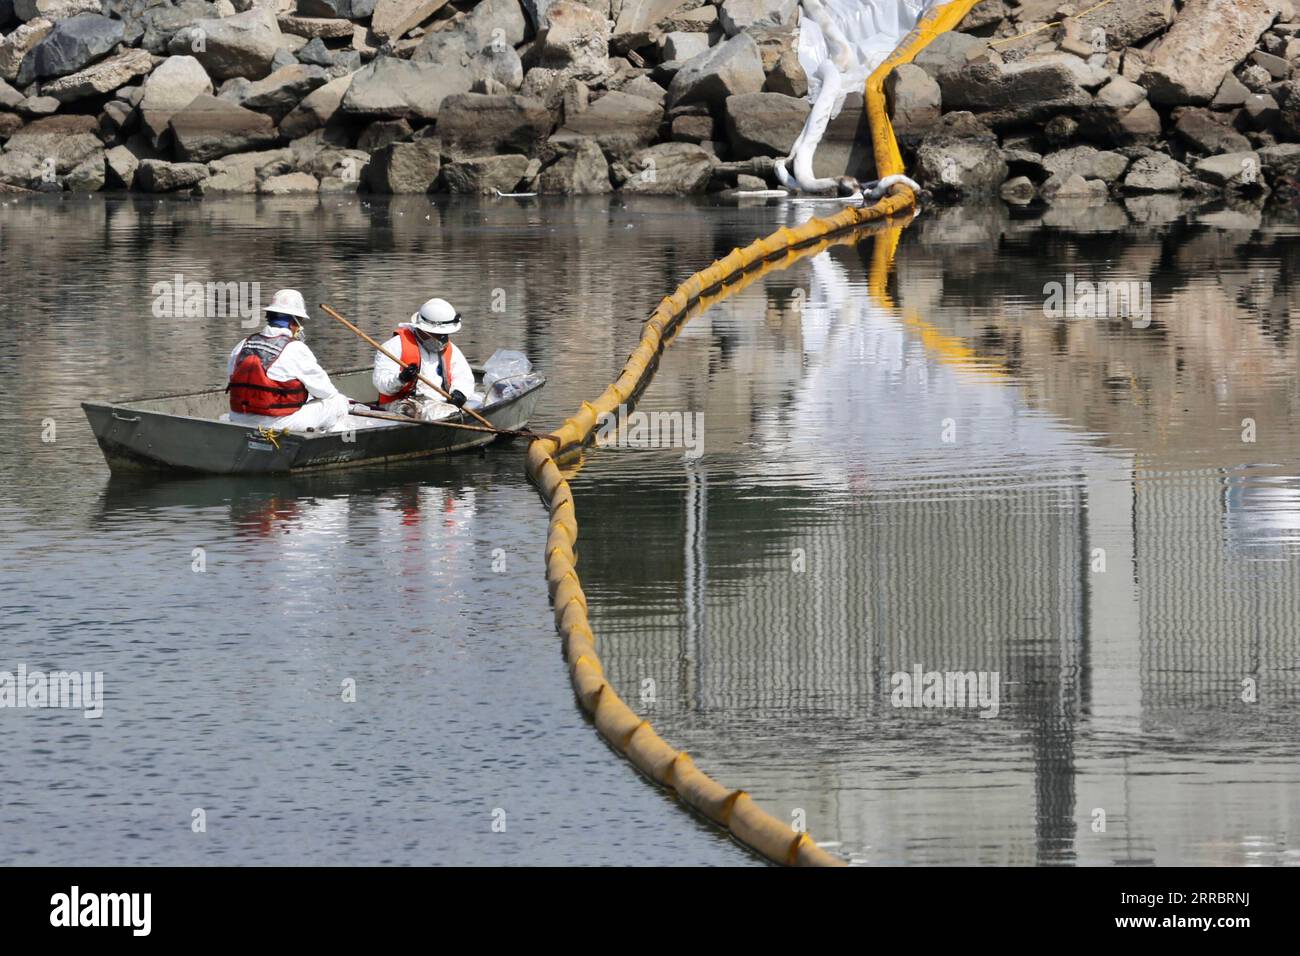 211005 -- LOS ANGELES, 5 ottobre 2021 -- i lavoratori raccolgono petrolio dall'acqua di mare a Huntington Beach, Orange County, California, Stati Uniti, 4 ottobre, 2021. una massiccia fuoriuscita di petrolio al largo della costa della contea di Orange, nella California meridionale, ha portato alla chiusura di un'area di 9 chilometri di fronte alla spiaggia domenica, e gli equipaggi del California Department of Fish and Wildlife CDFW stanno ripulendo l'inquinamento causato dalle strutture nelle acque federali. U.S.-CALIFORNIA-MASSICCE FUORIUSCITE DI OLIO PER LA PULIZIA DI GAOXSHAN PUBLICATIONXNOTXINXCHN Foto Stock